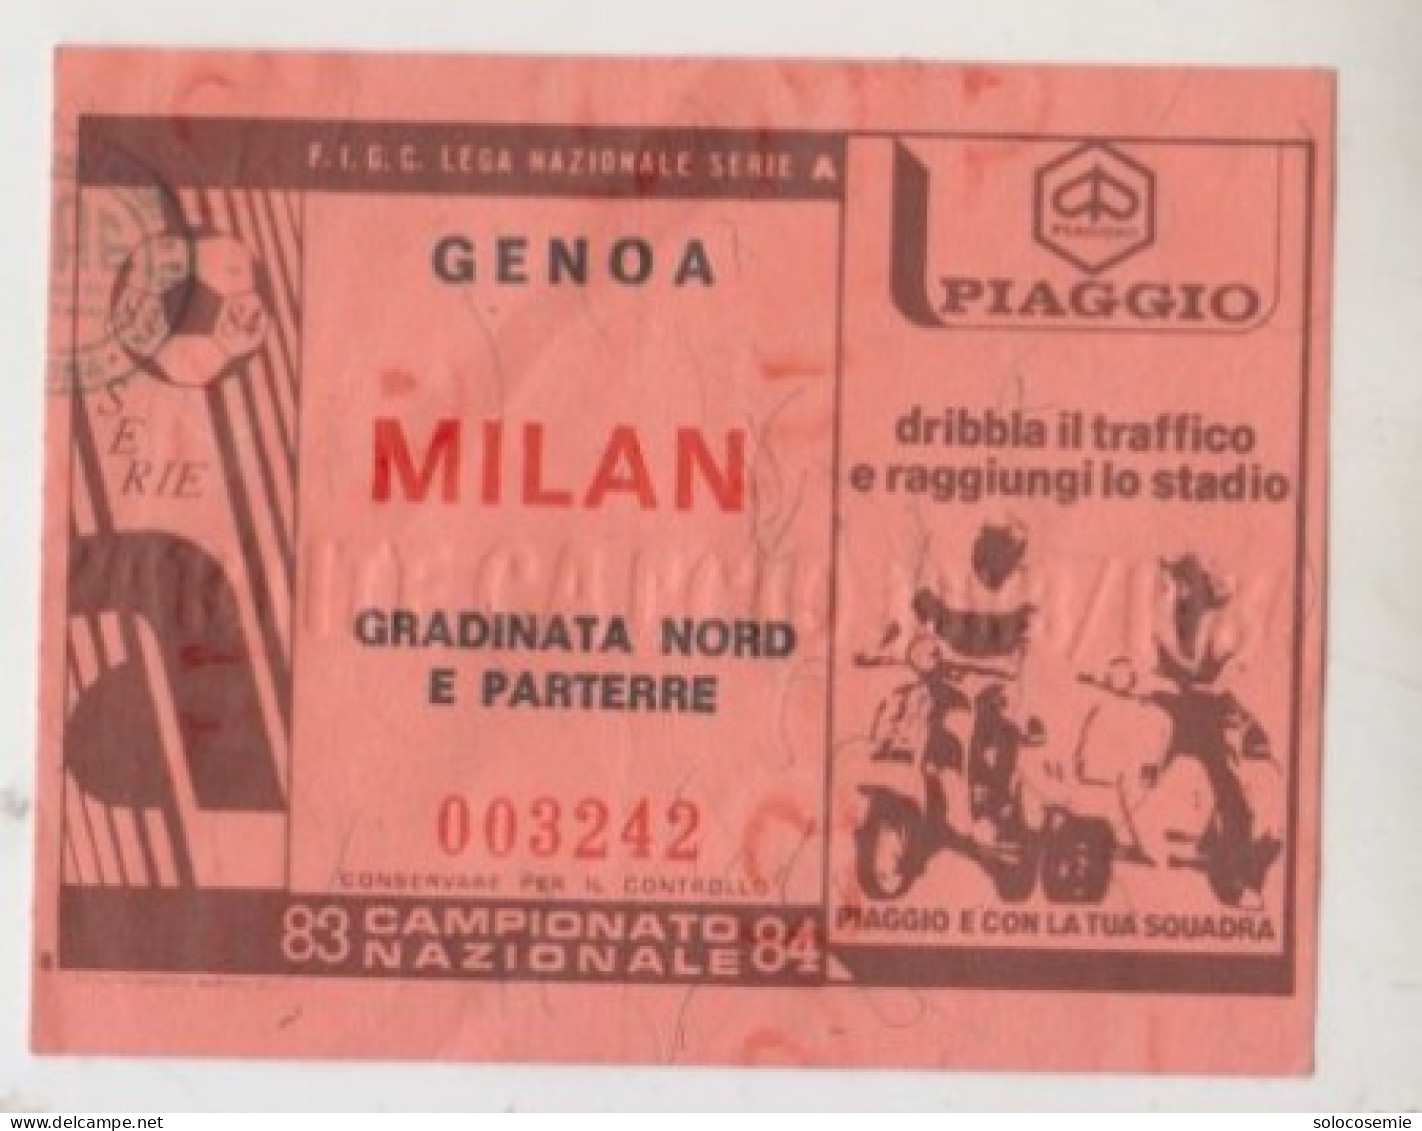 1983/84 GENOA  - MILAN #  Calcio  #  Ingresso  Stadio / Ticket  - 003242 (F) - Tickets D'entrée